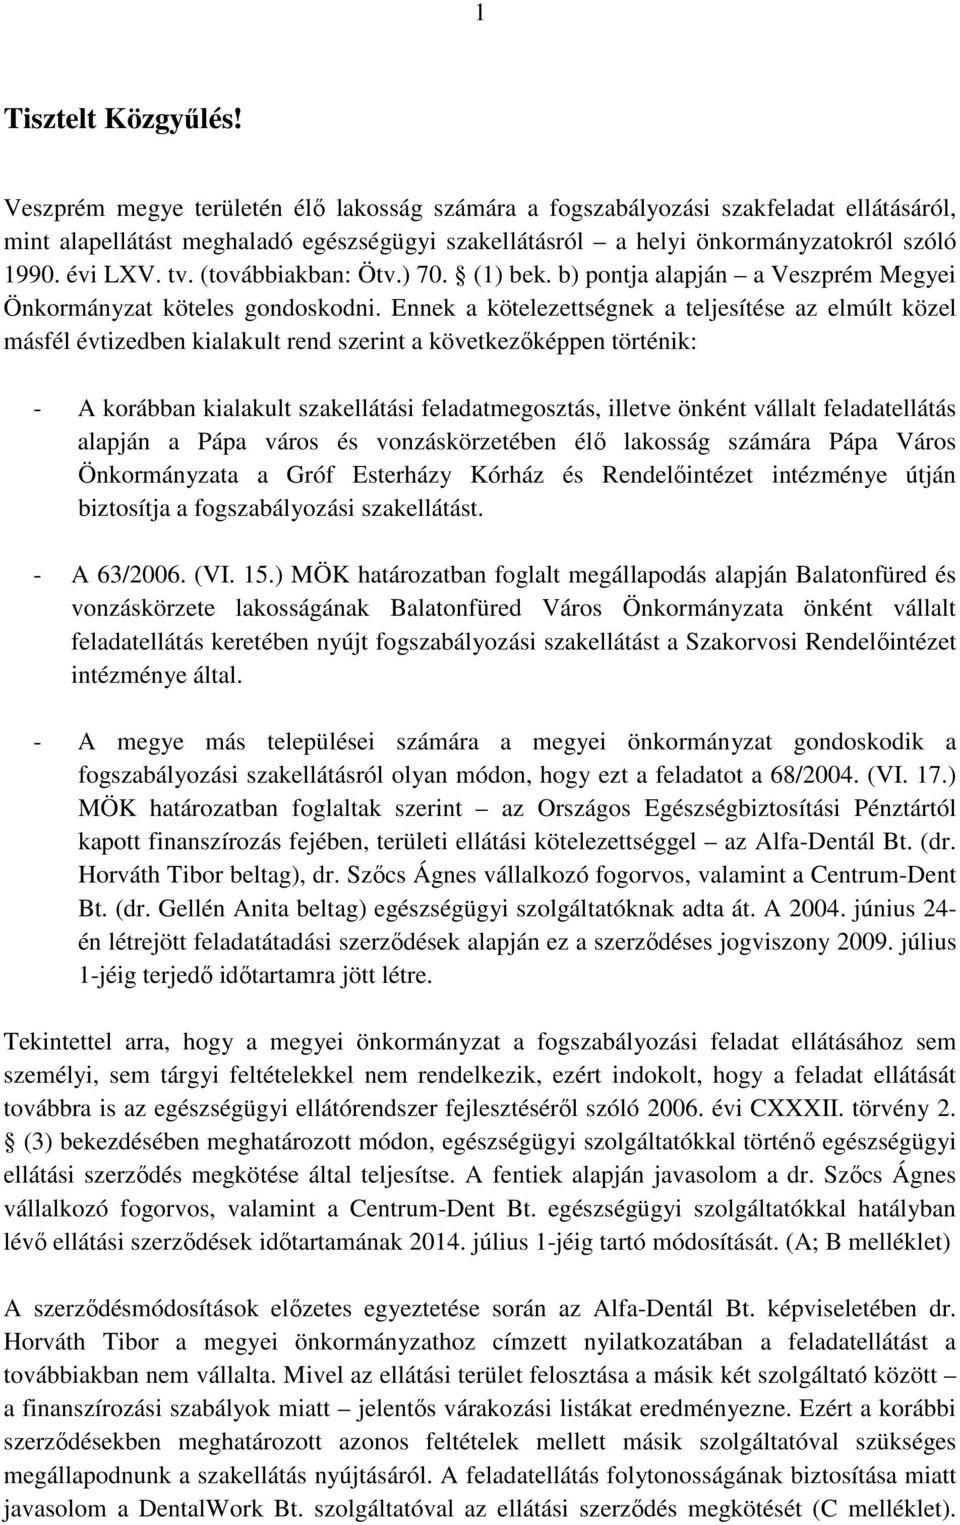 (továbbiakban: Ötv.) 70. (1) bek. b) pontja alapján a Veszprém Megyei Önkormányzat köteles gondoskodni.